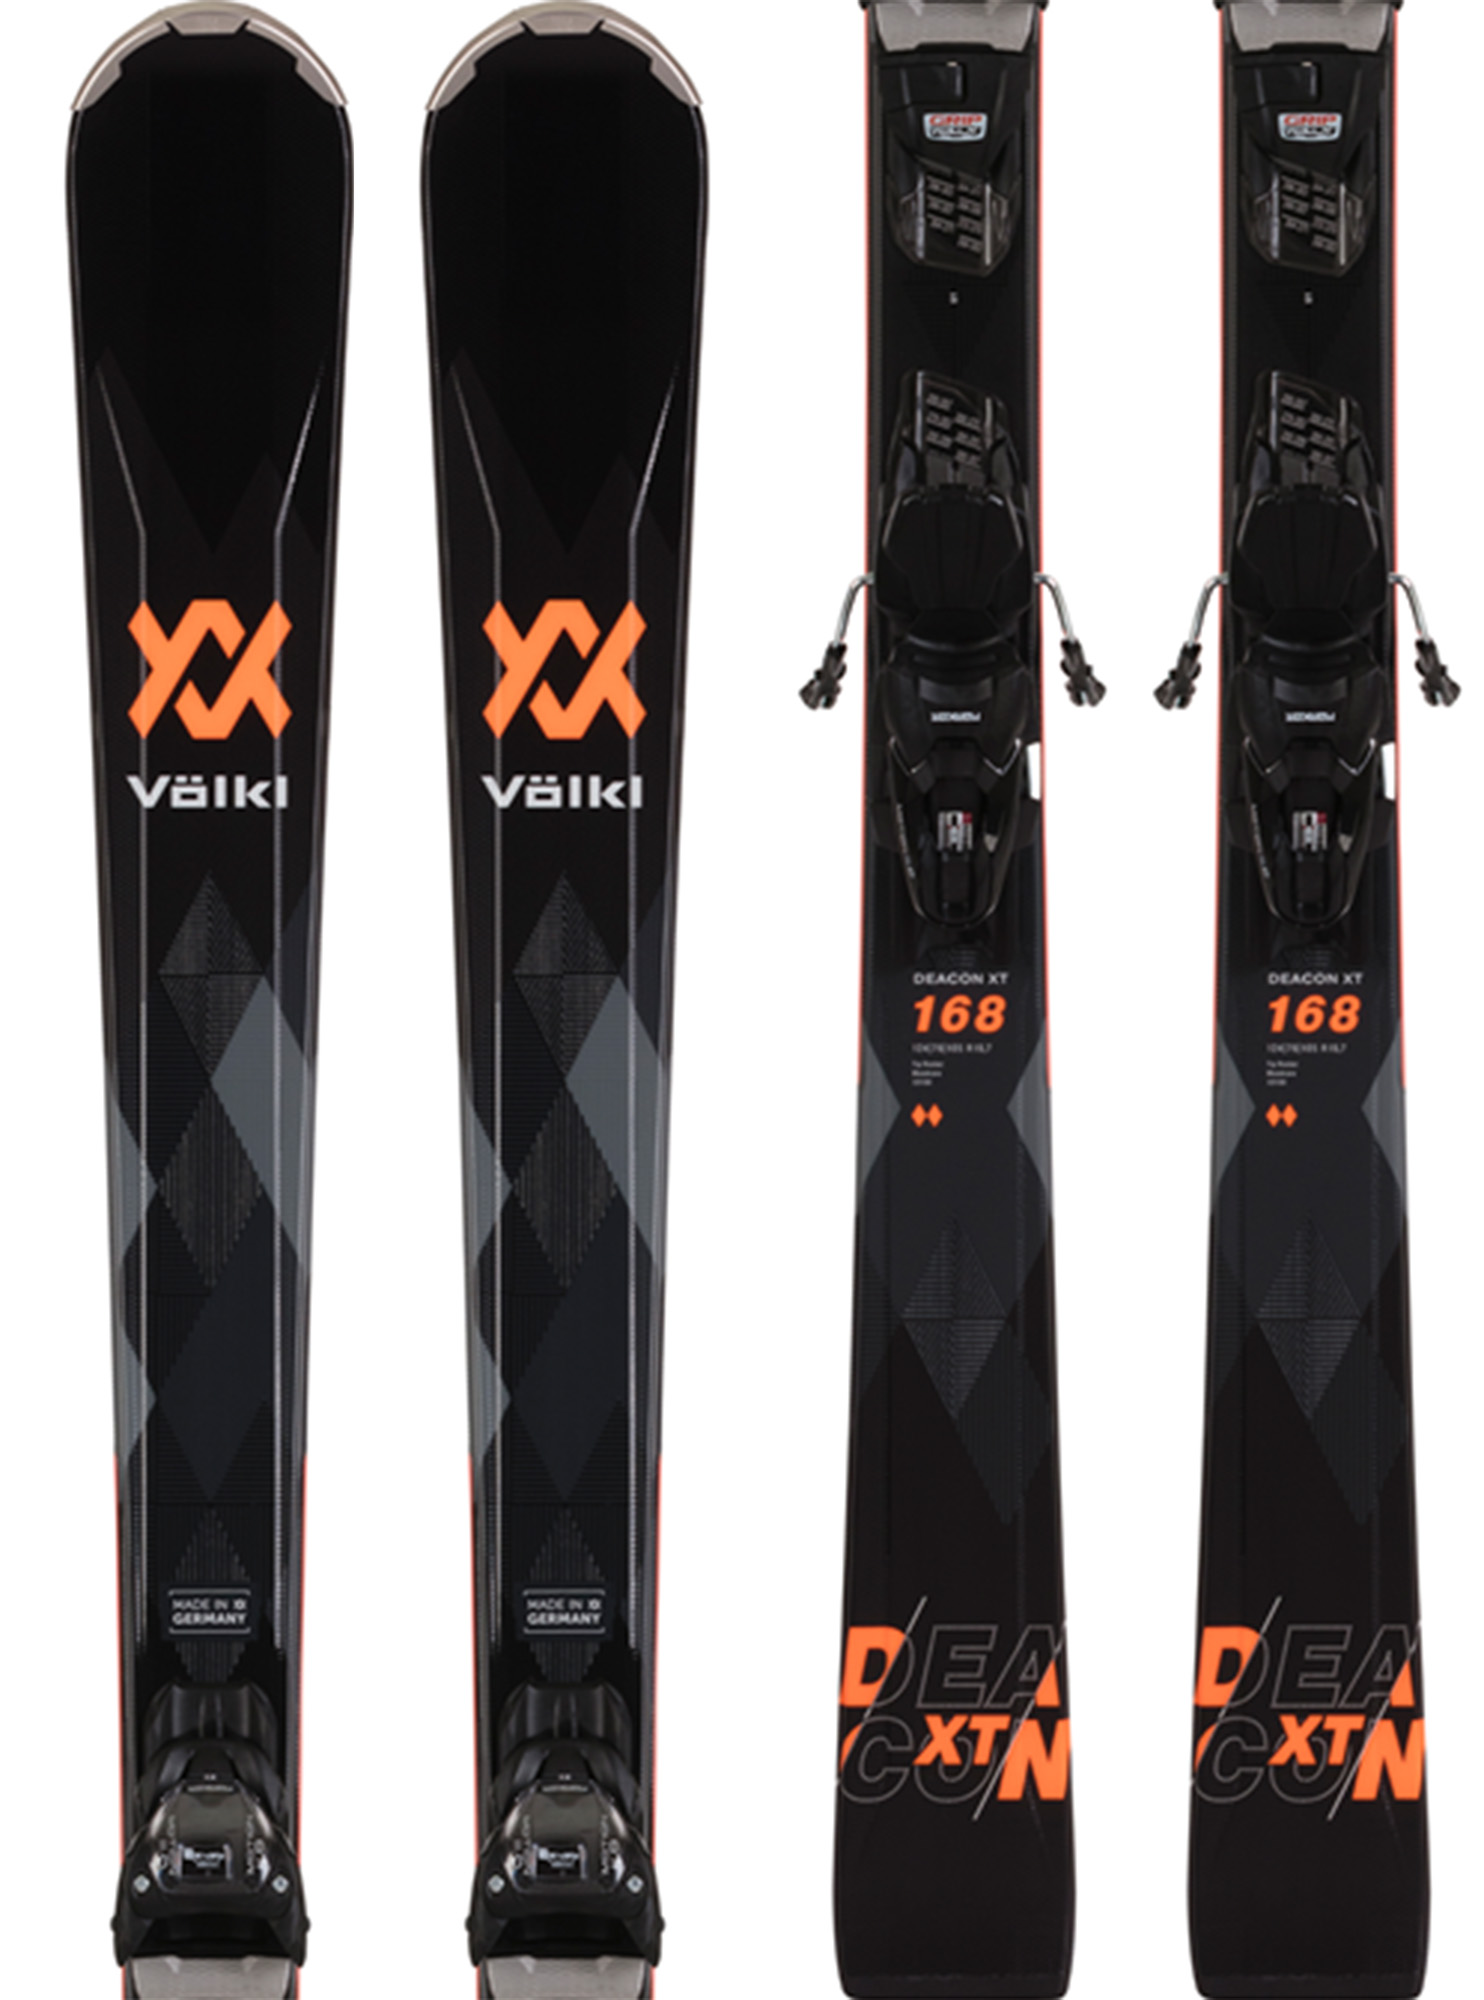 Volkl Deacon XT + VMotion 10 GripWalk Black Skis